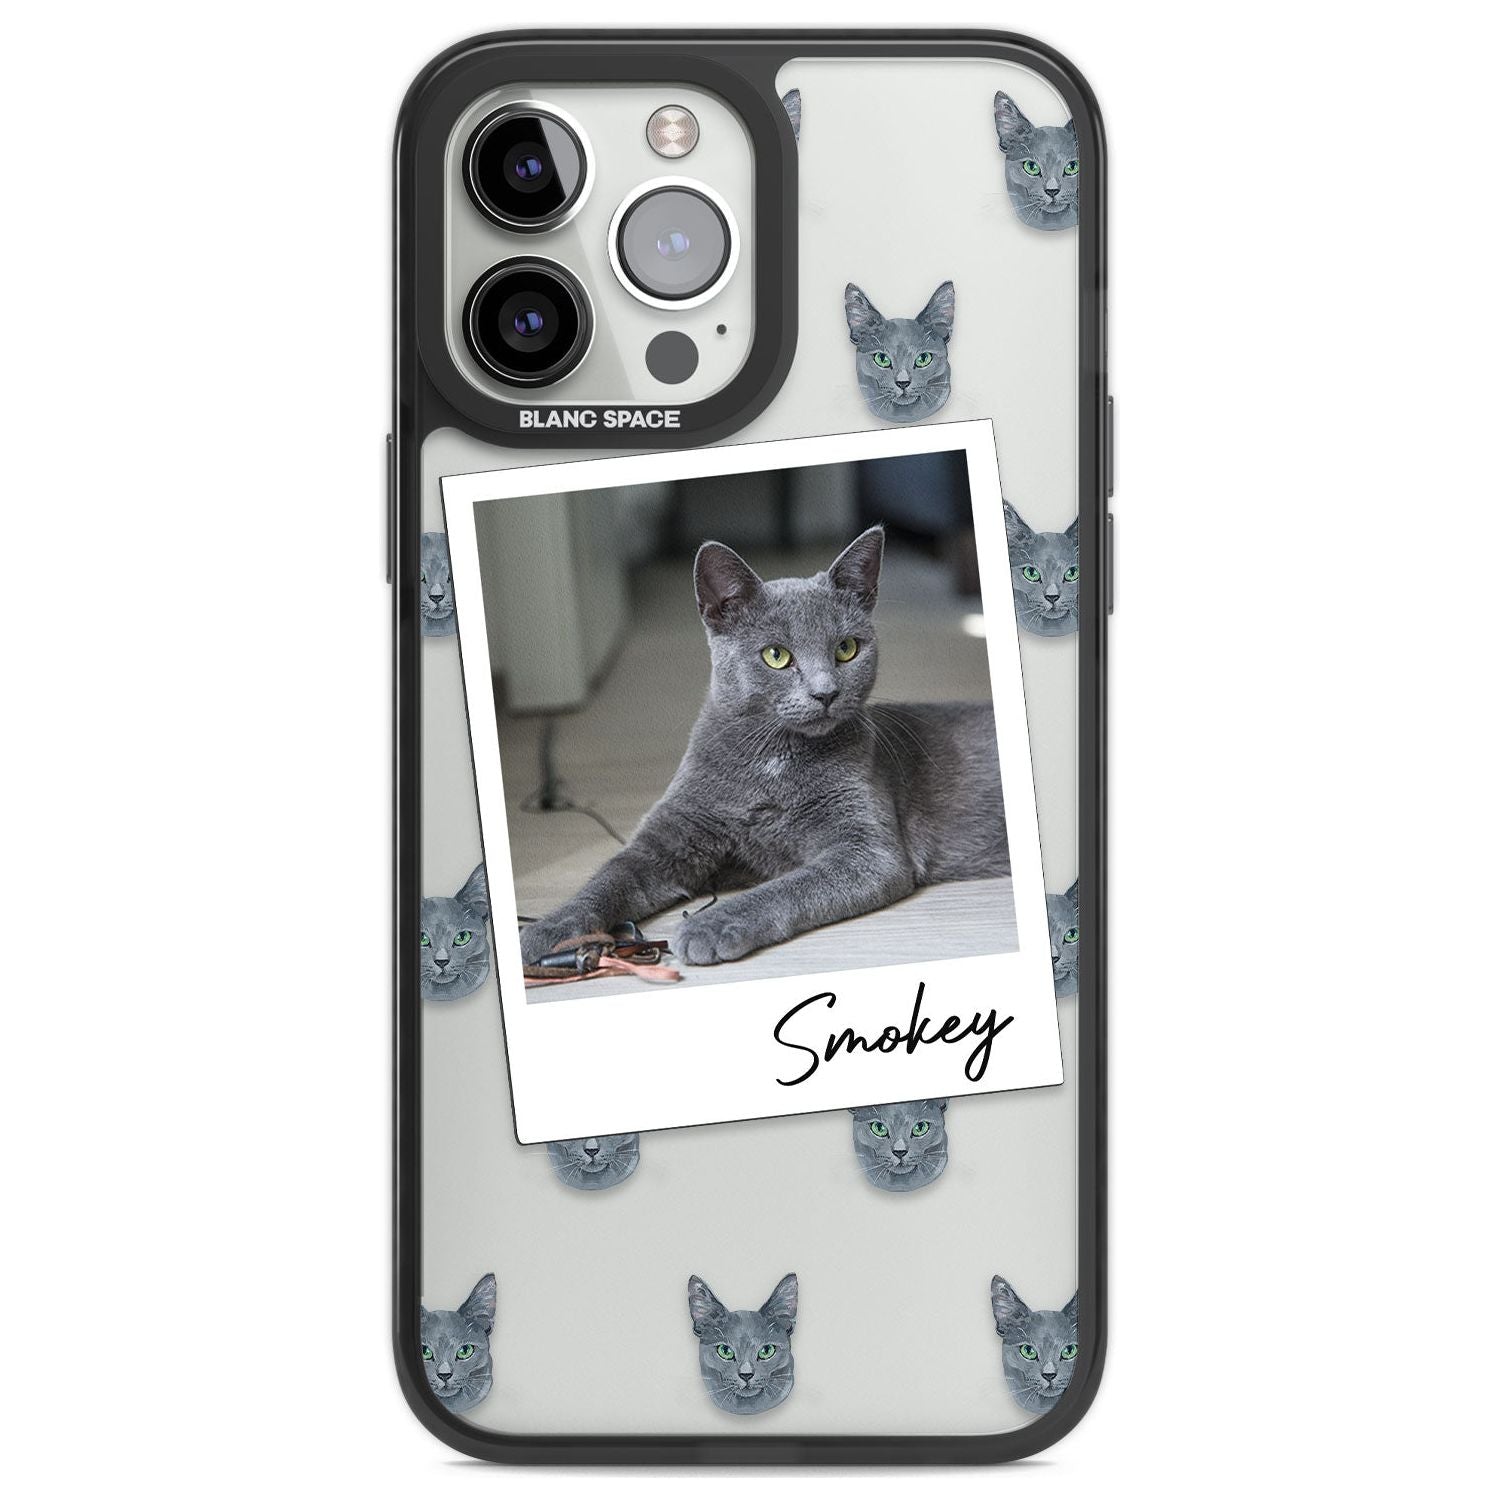 Personalised Korat Cat Photo Custom Phone Case iPhone 13 Pro Max / Black Impact Case,iPhone 14 Pro Max / Black Impact Case Blanc Space